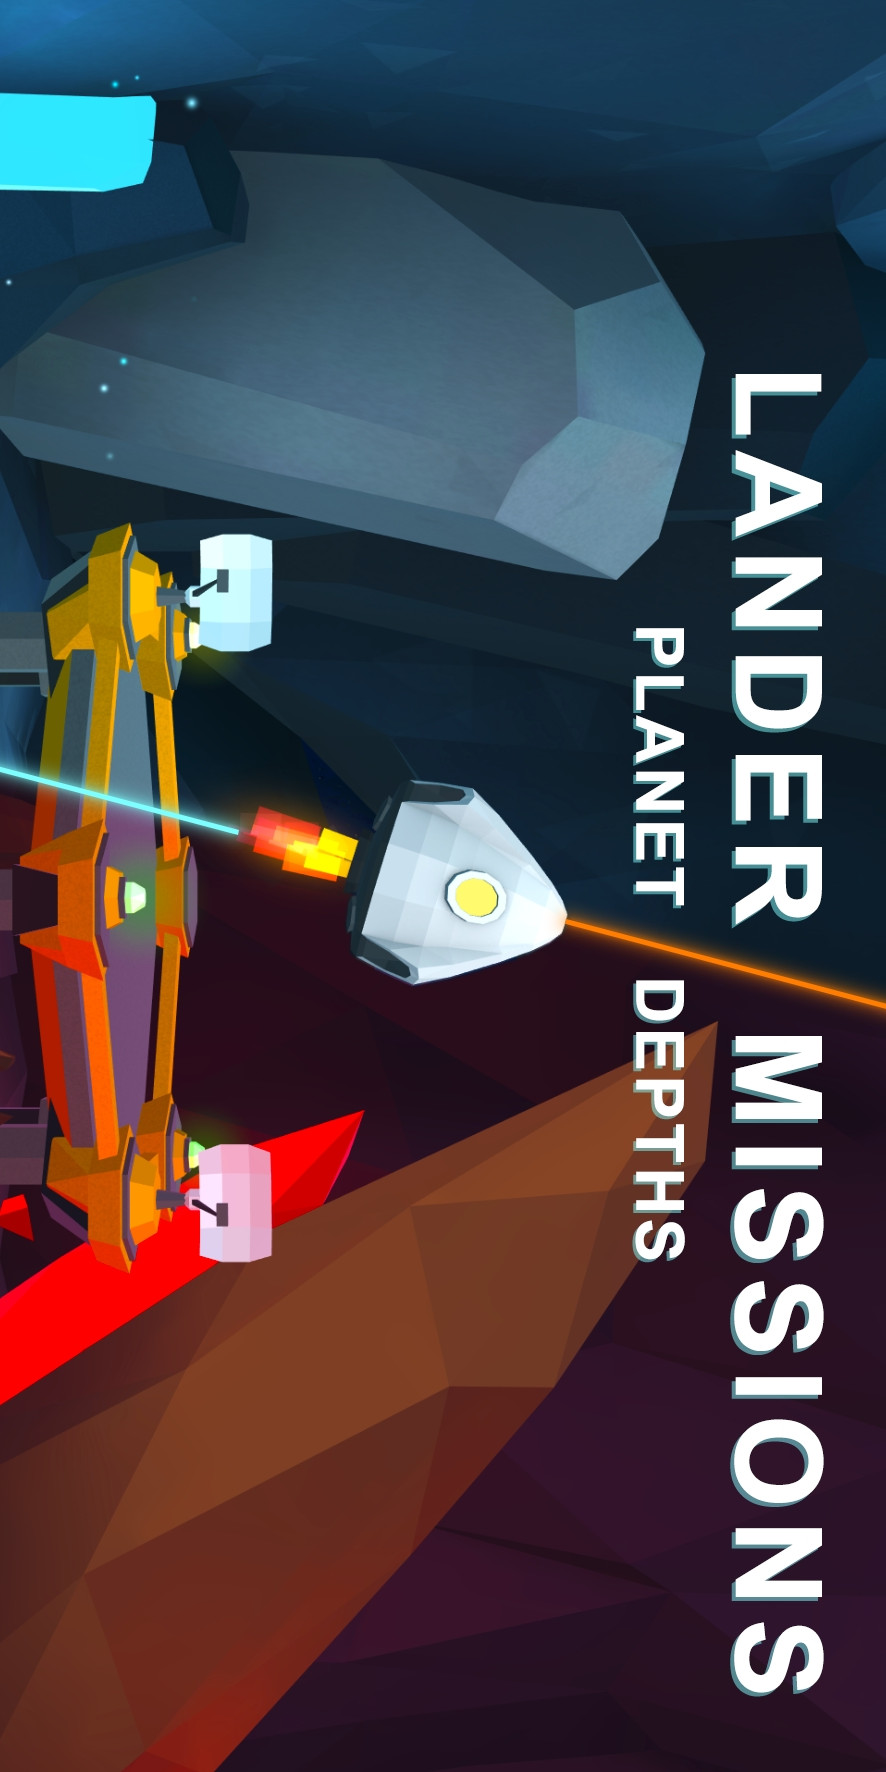 Lander Missions: planet depths